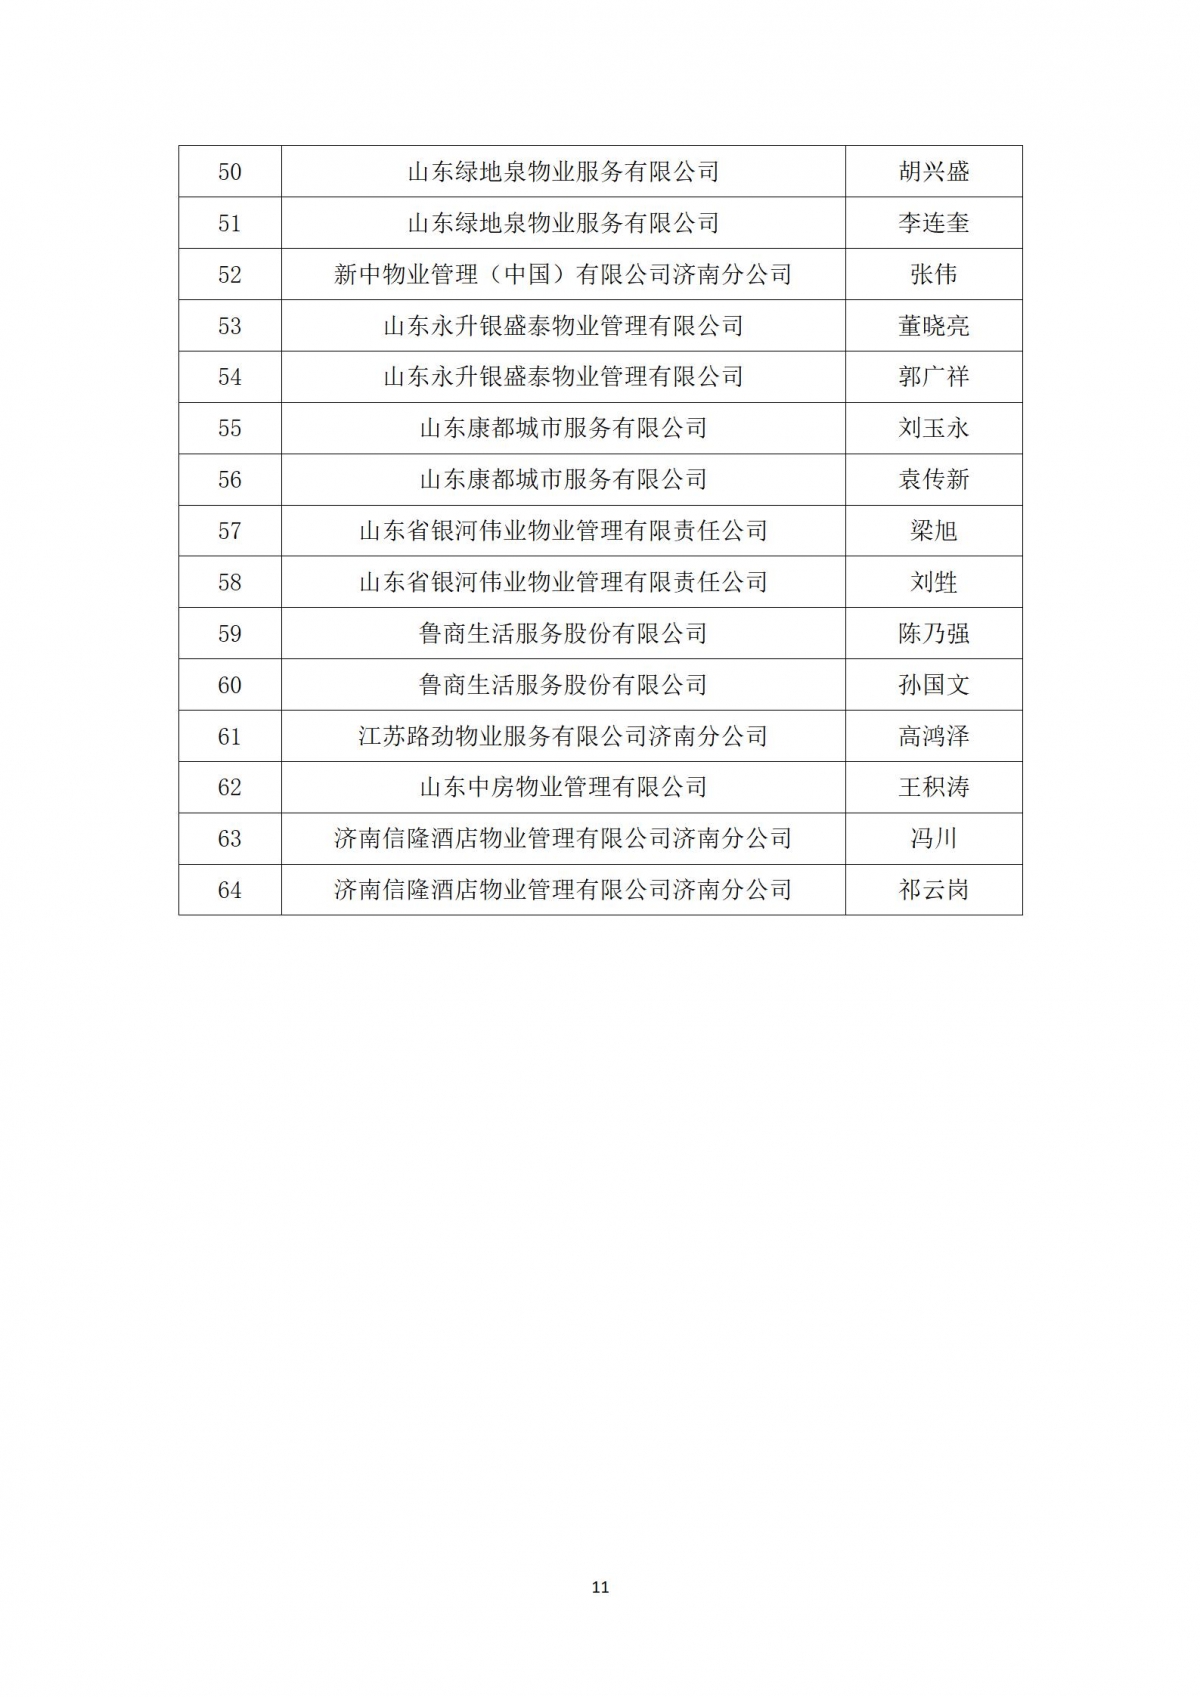 关于“天城杯”第七届济南市物业服务行业职业技能竞赛选手名单的公示_11